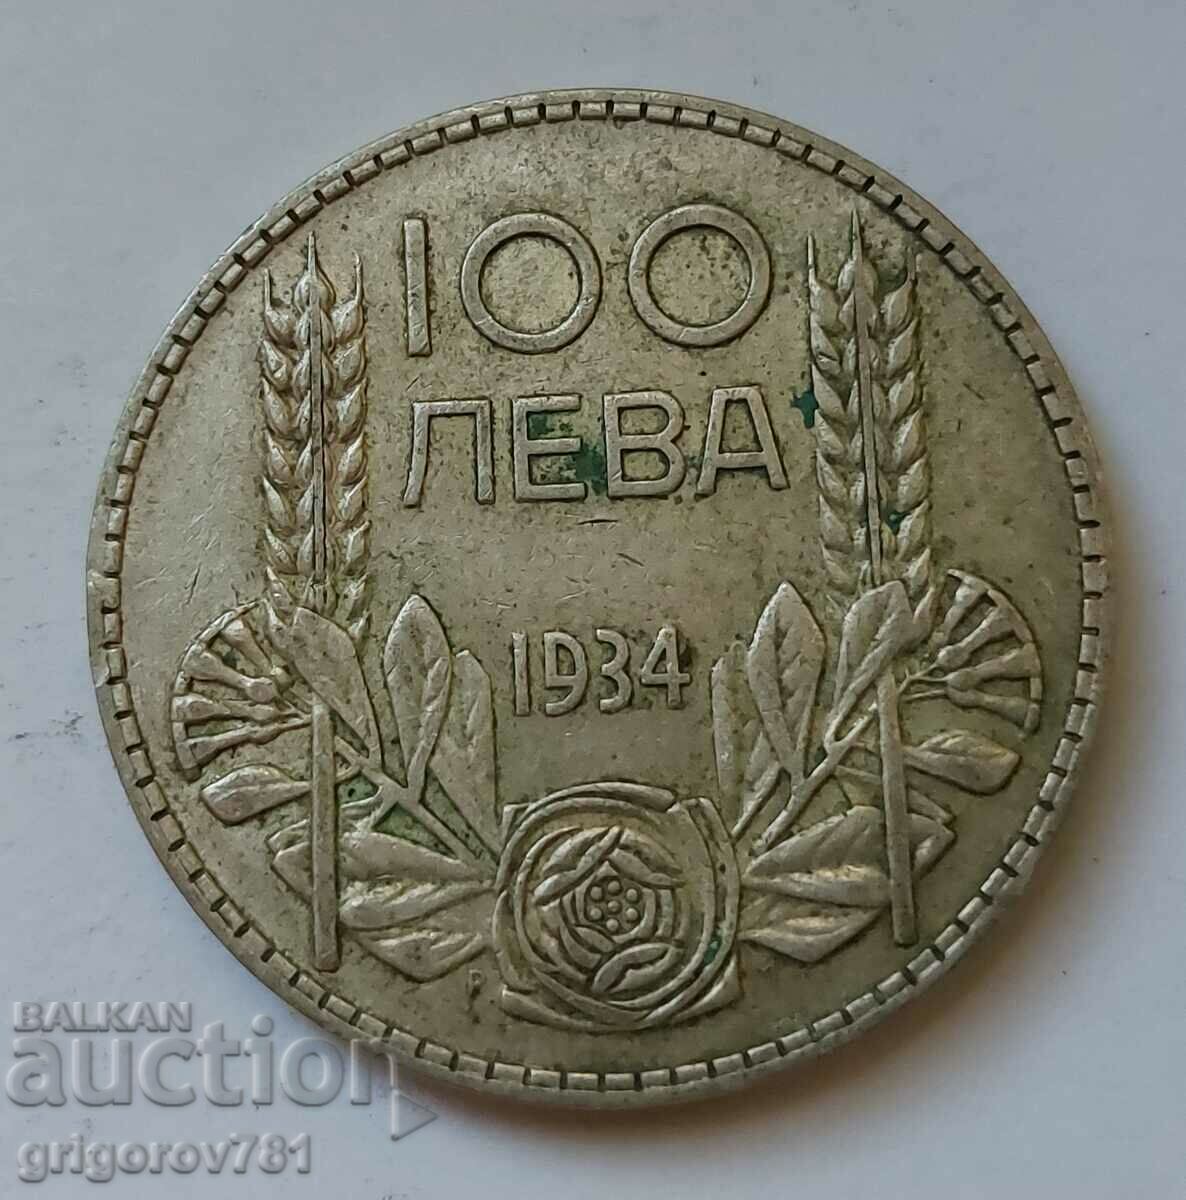 100 leva silver Bulgaria 1934 - silver coin #130